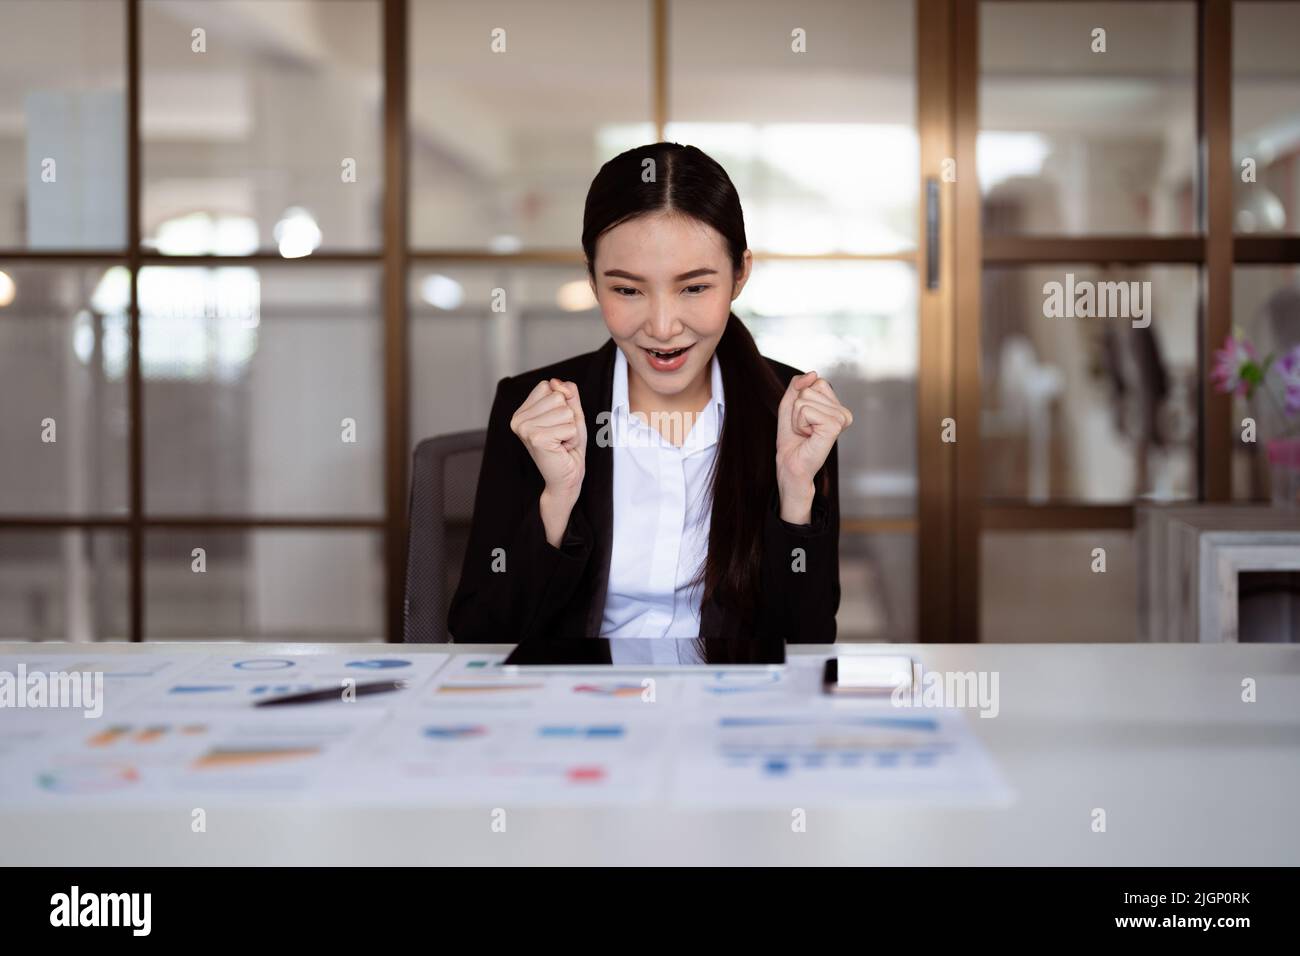 Begeisterte junge asiatische Geschäftsfrau feiert erfolgreiche Finanzprojektergebnisse, zieht wichtige Unternehmenskunden an, Traumziel erreicht. Stockfoto